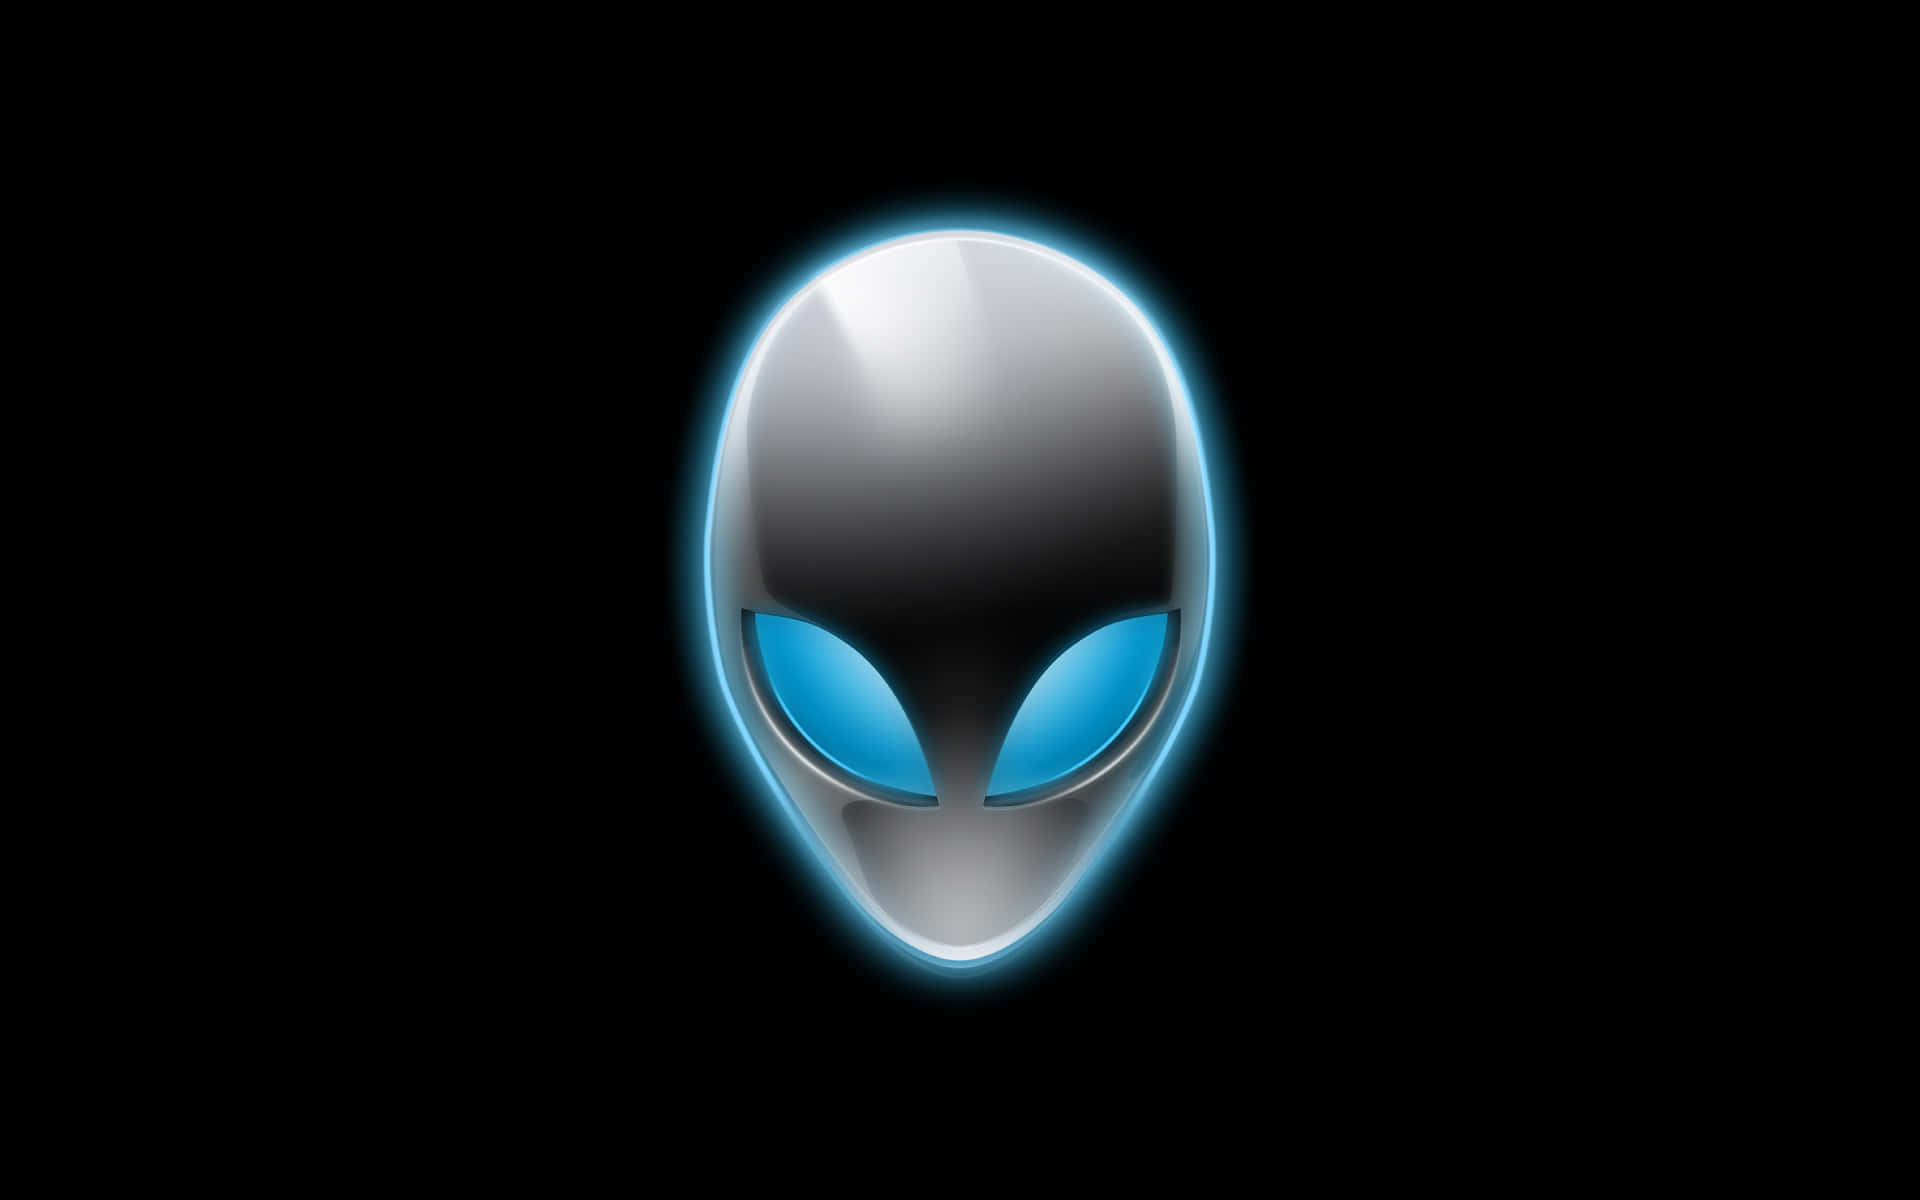 Avanceret Alienware-teknologi-tapet med futuristisk design